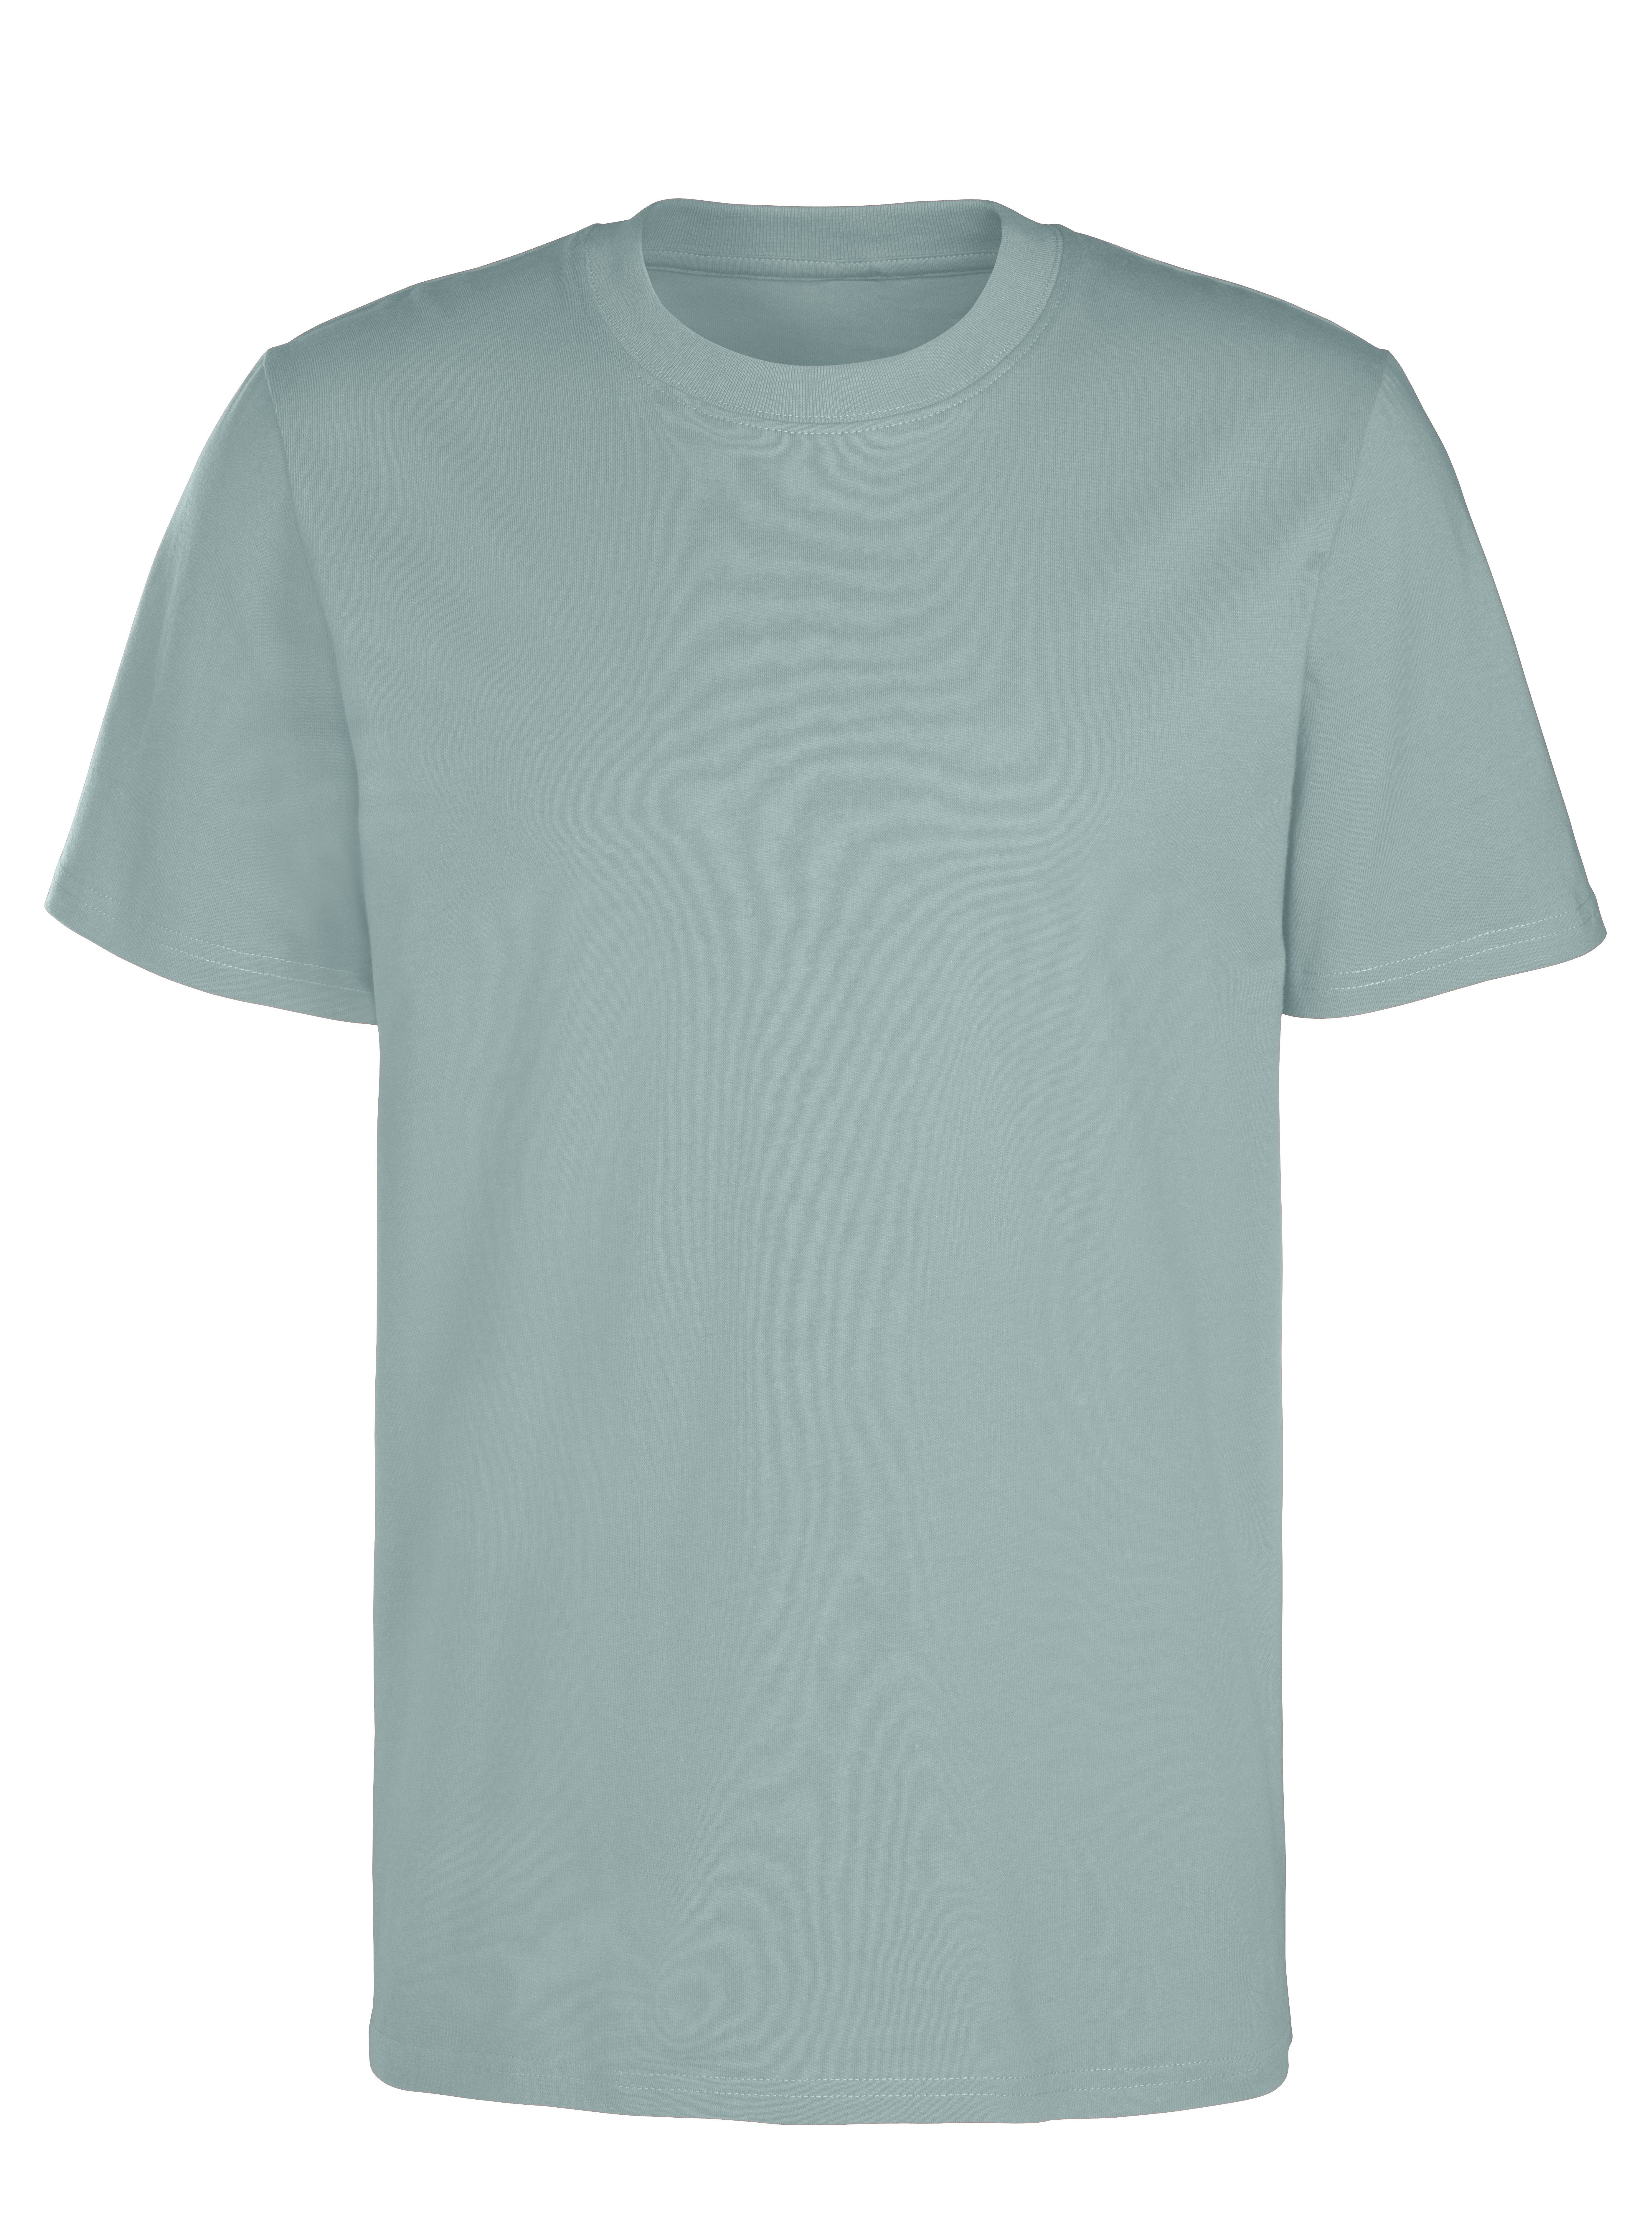 Must-Have Form stein in ein / KangaROOS (2er-Pack) klassischer T-Shirt mint